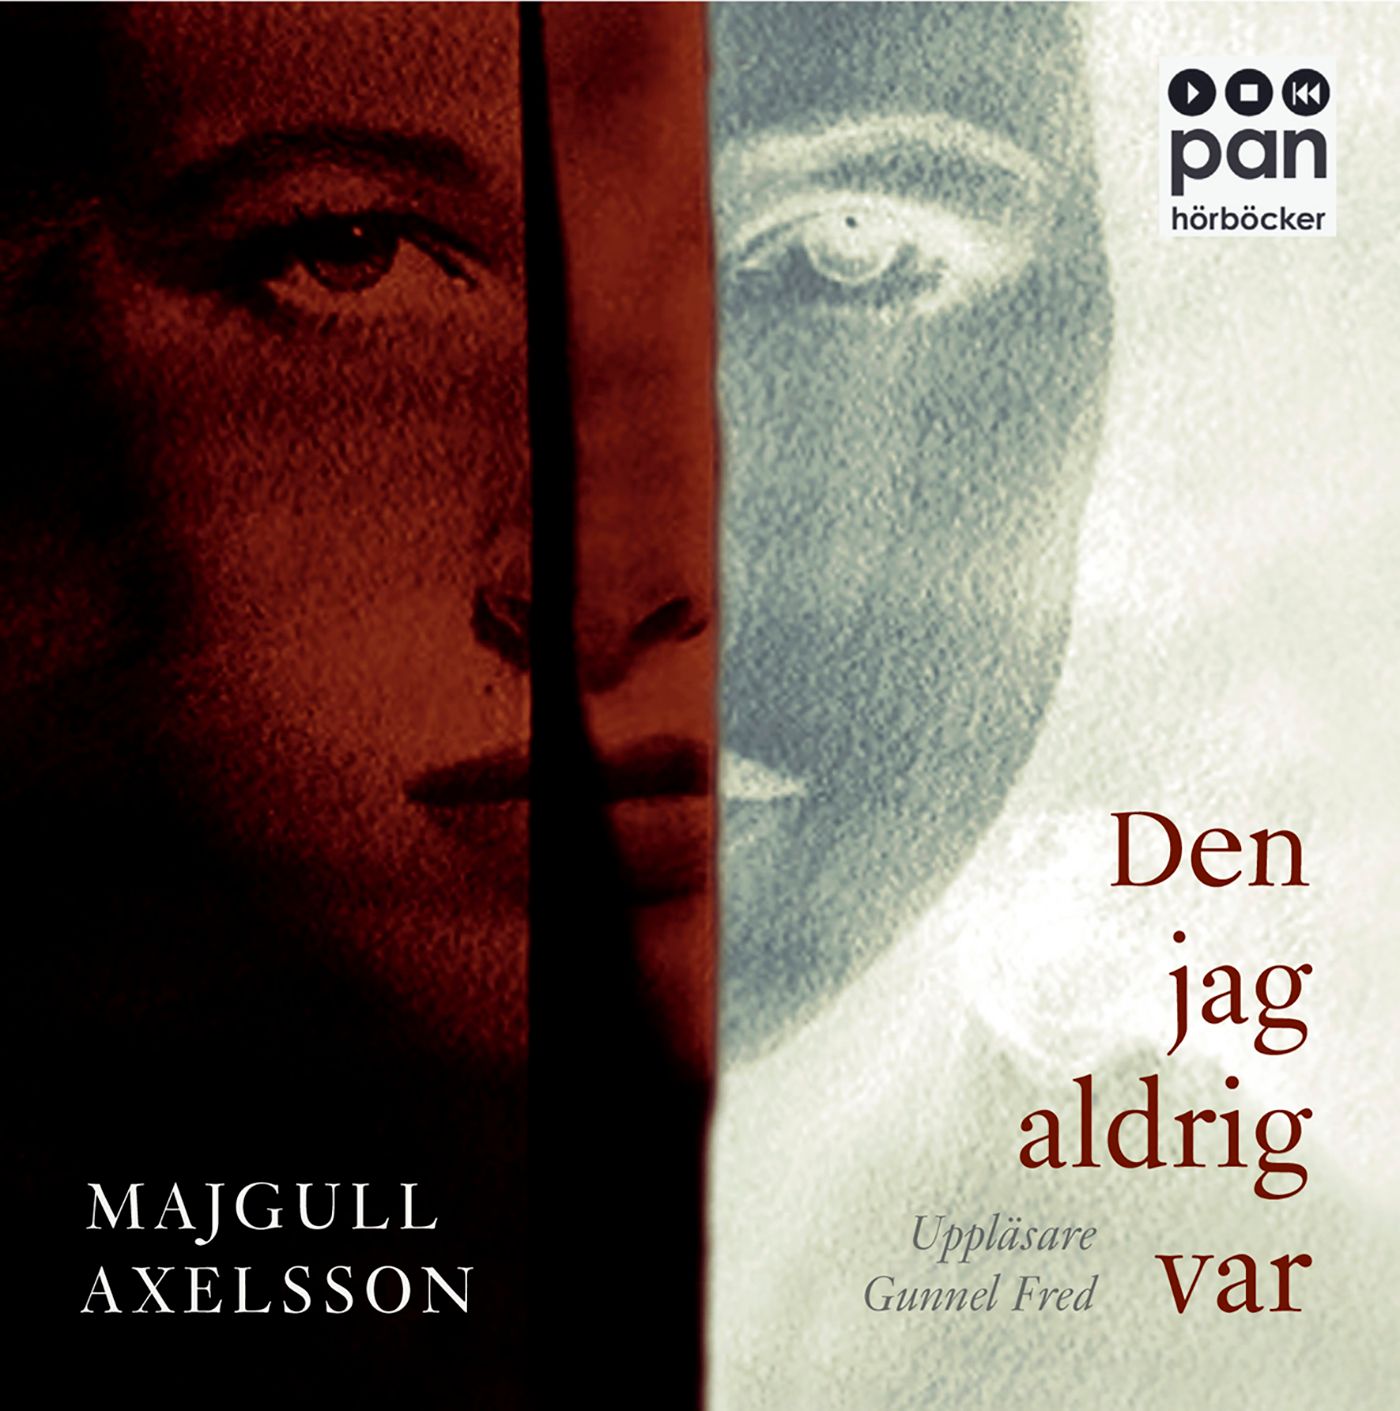 Den jag aldrig var, ljudbok av Majgull Axelsson